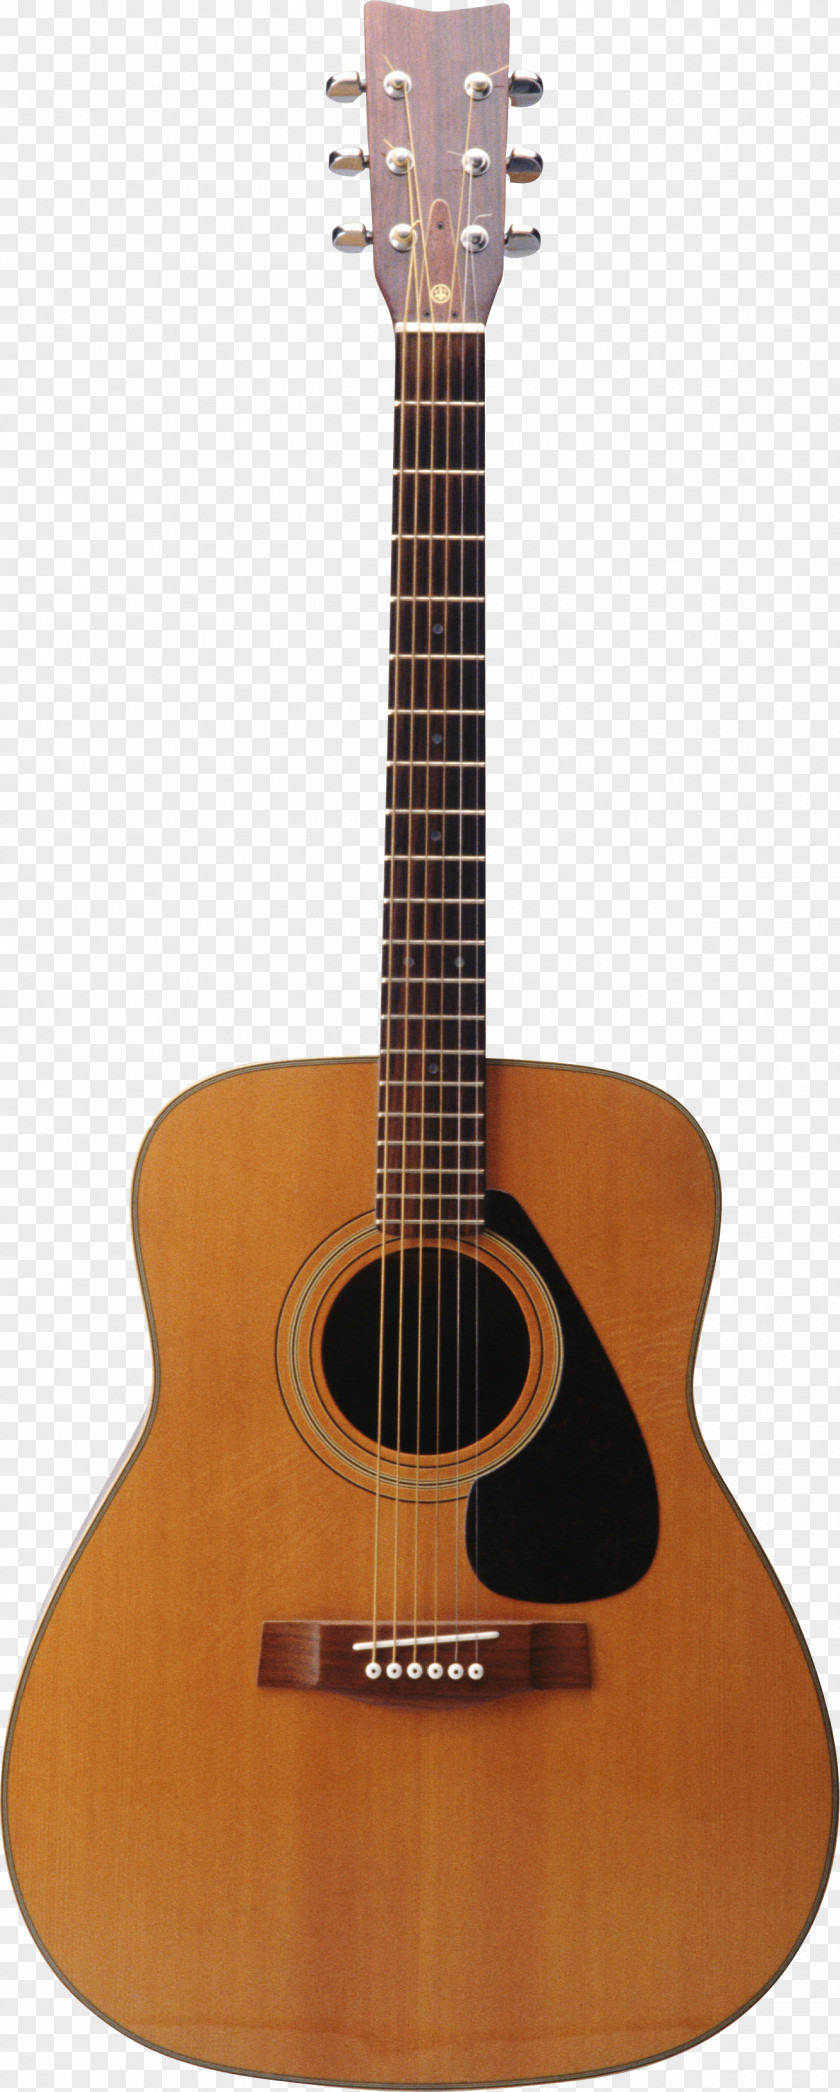 Guitar Image PNG